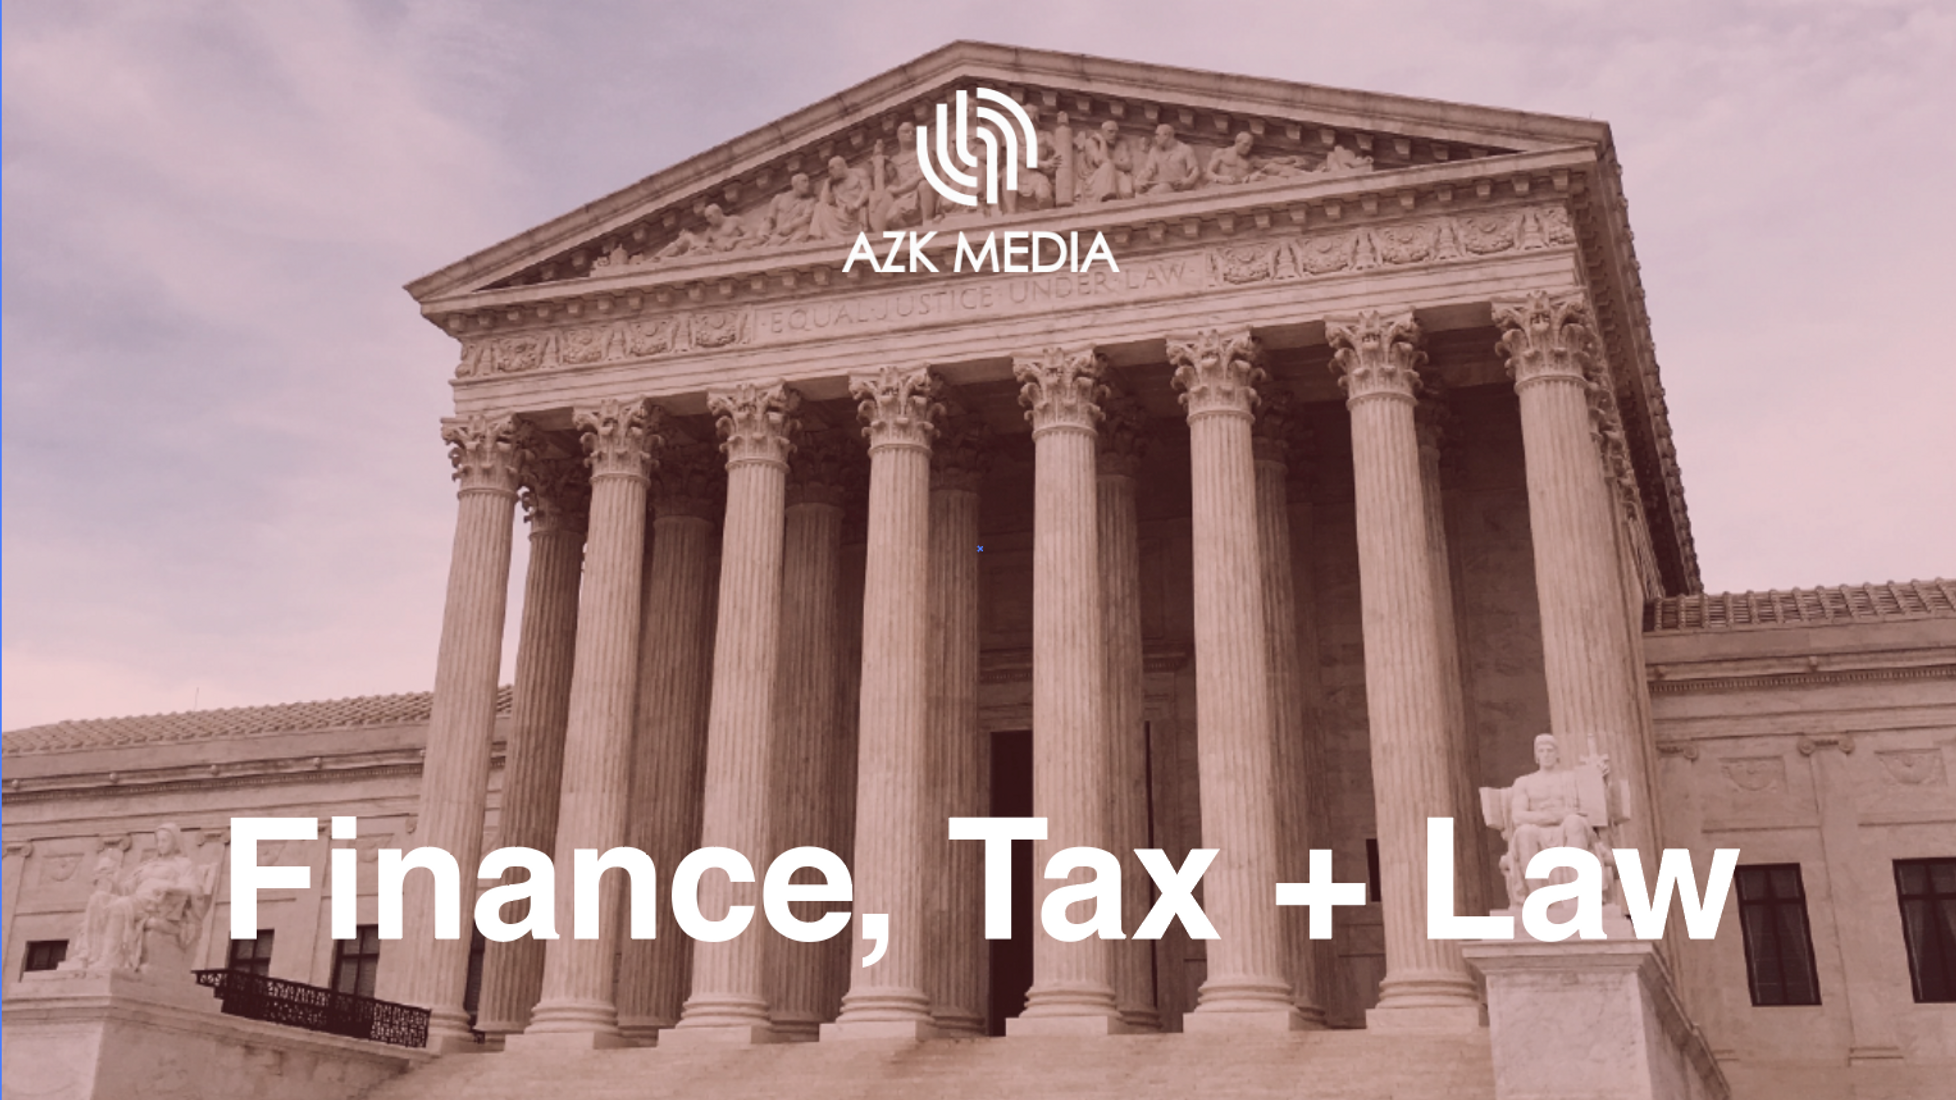 Finance, Law + Tax